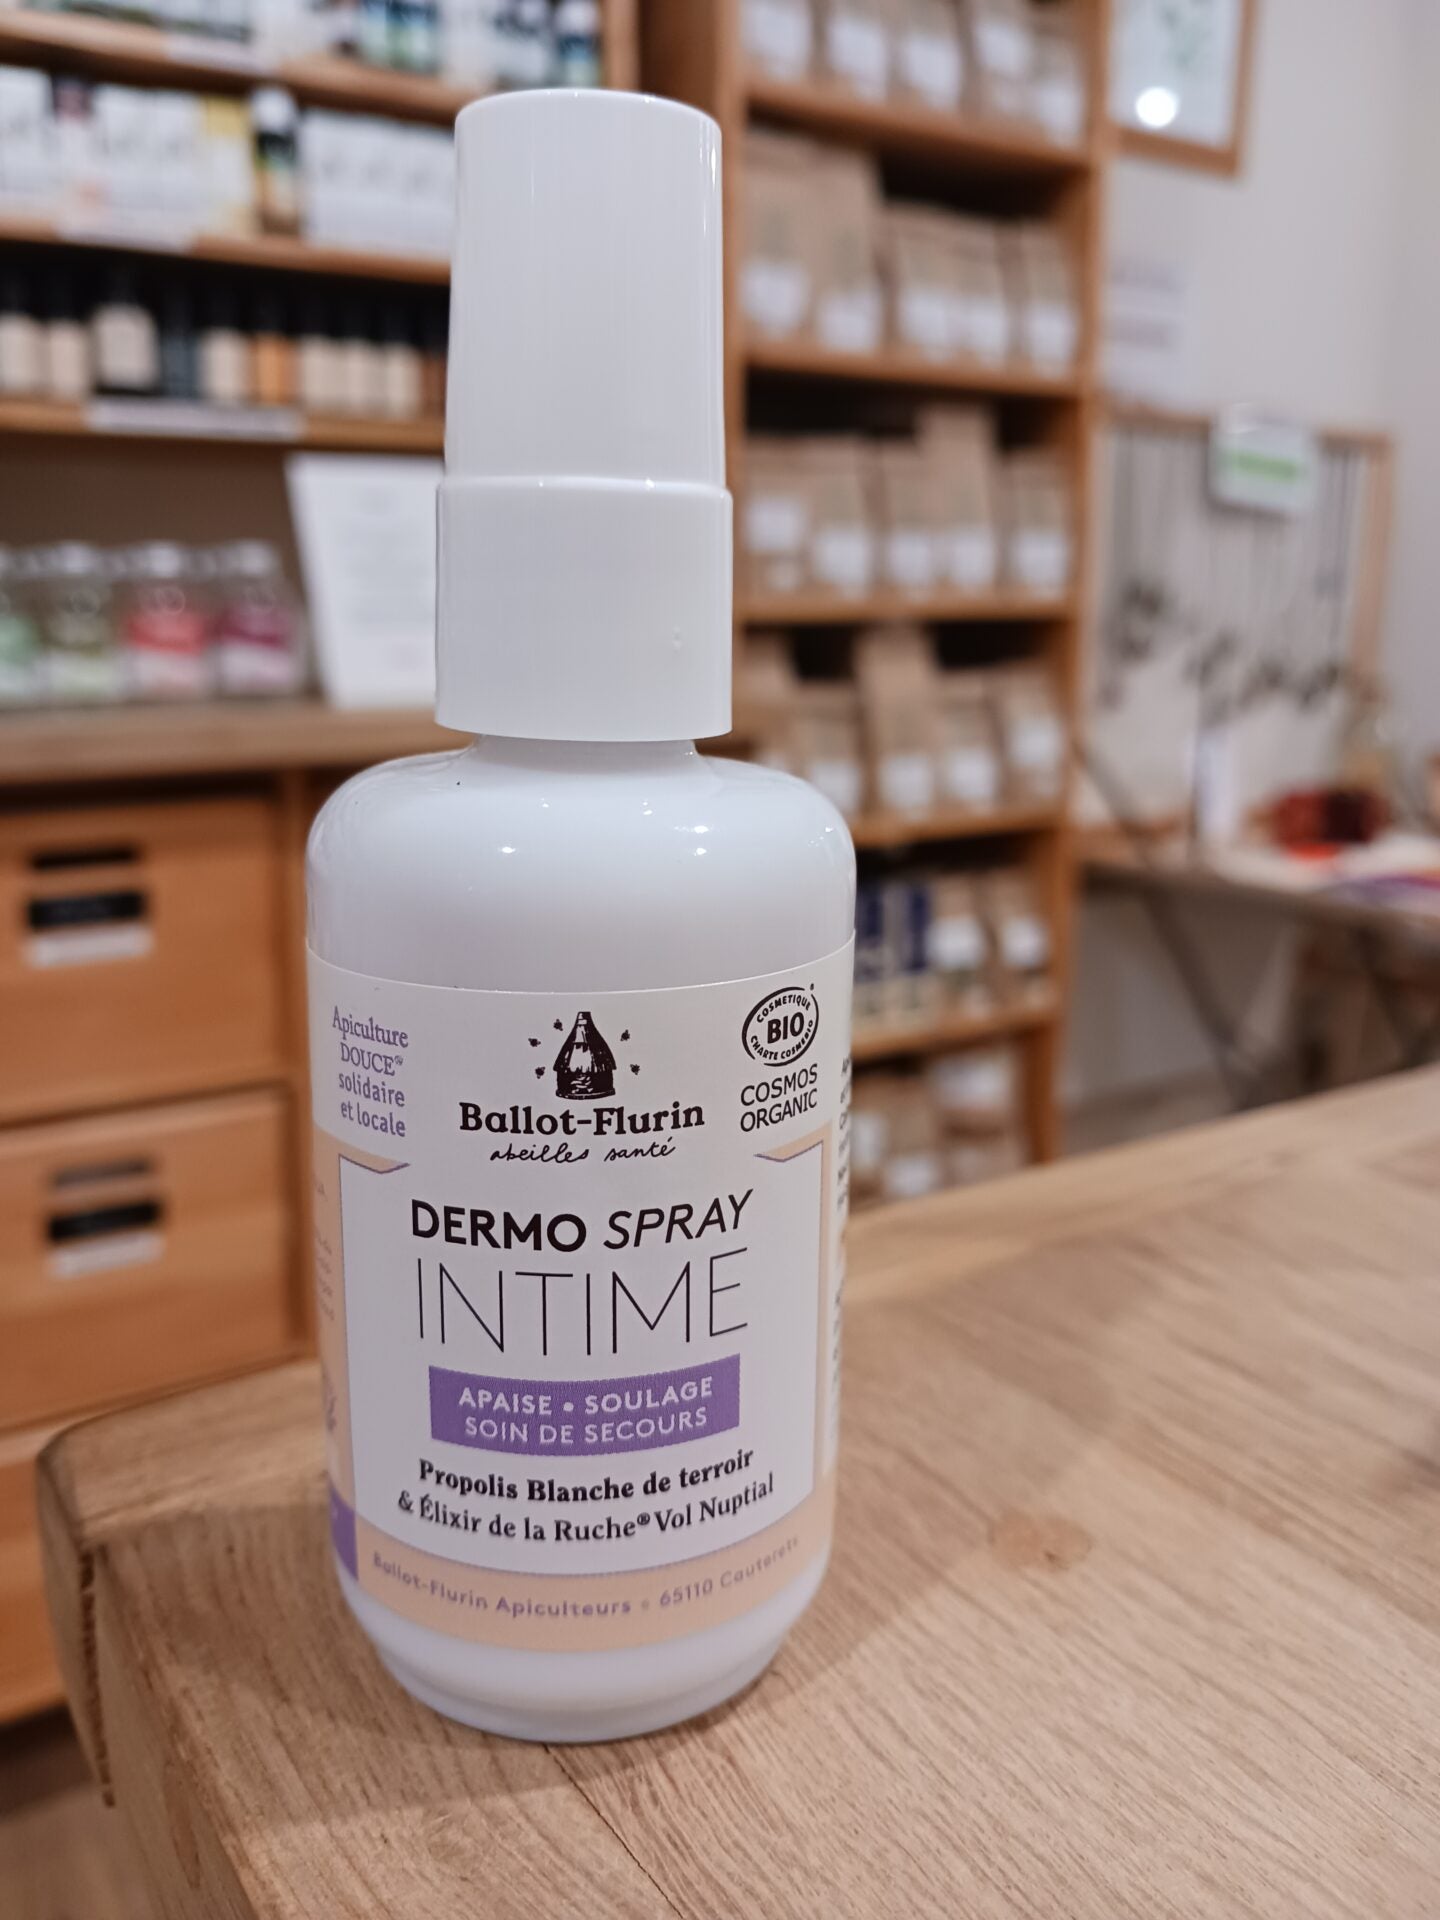 Dermo spray Intime - soin de secours